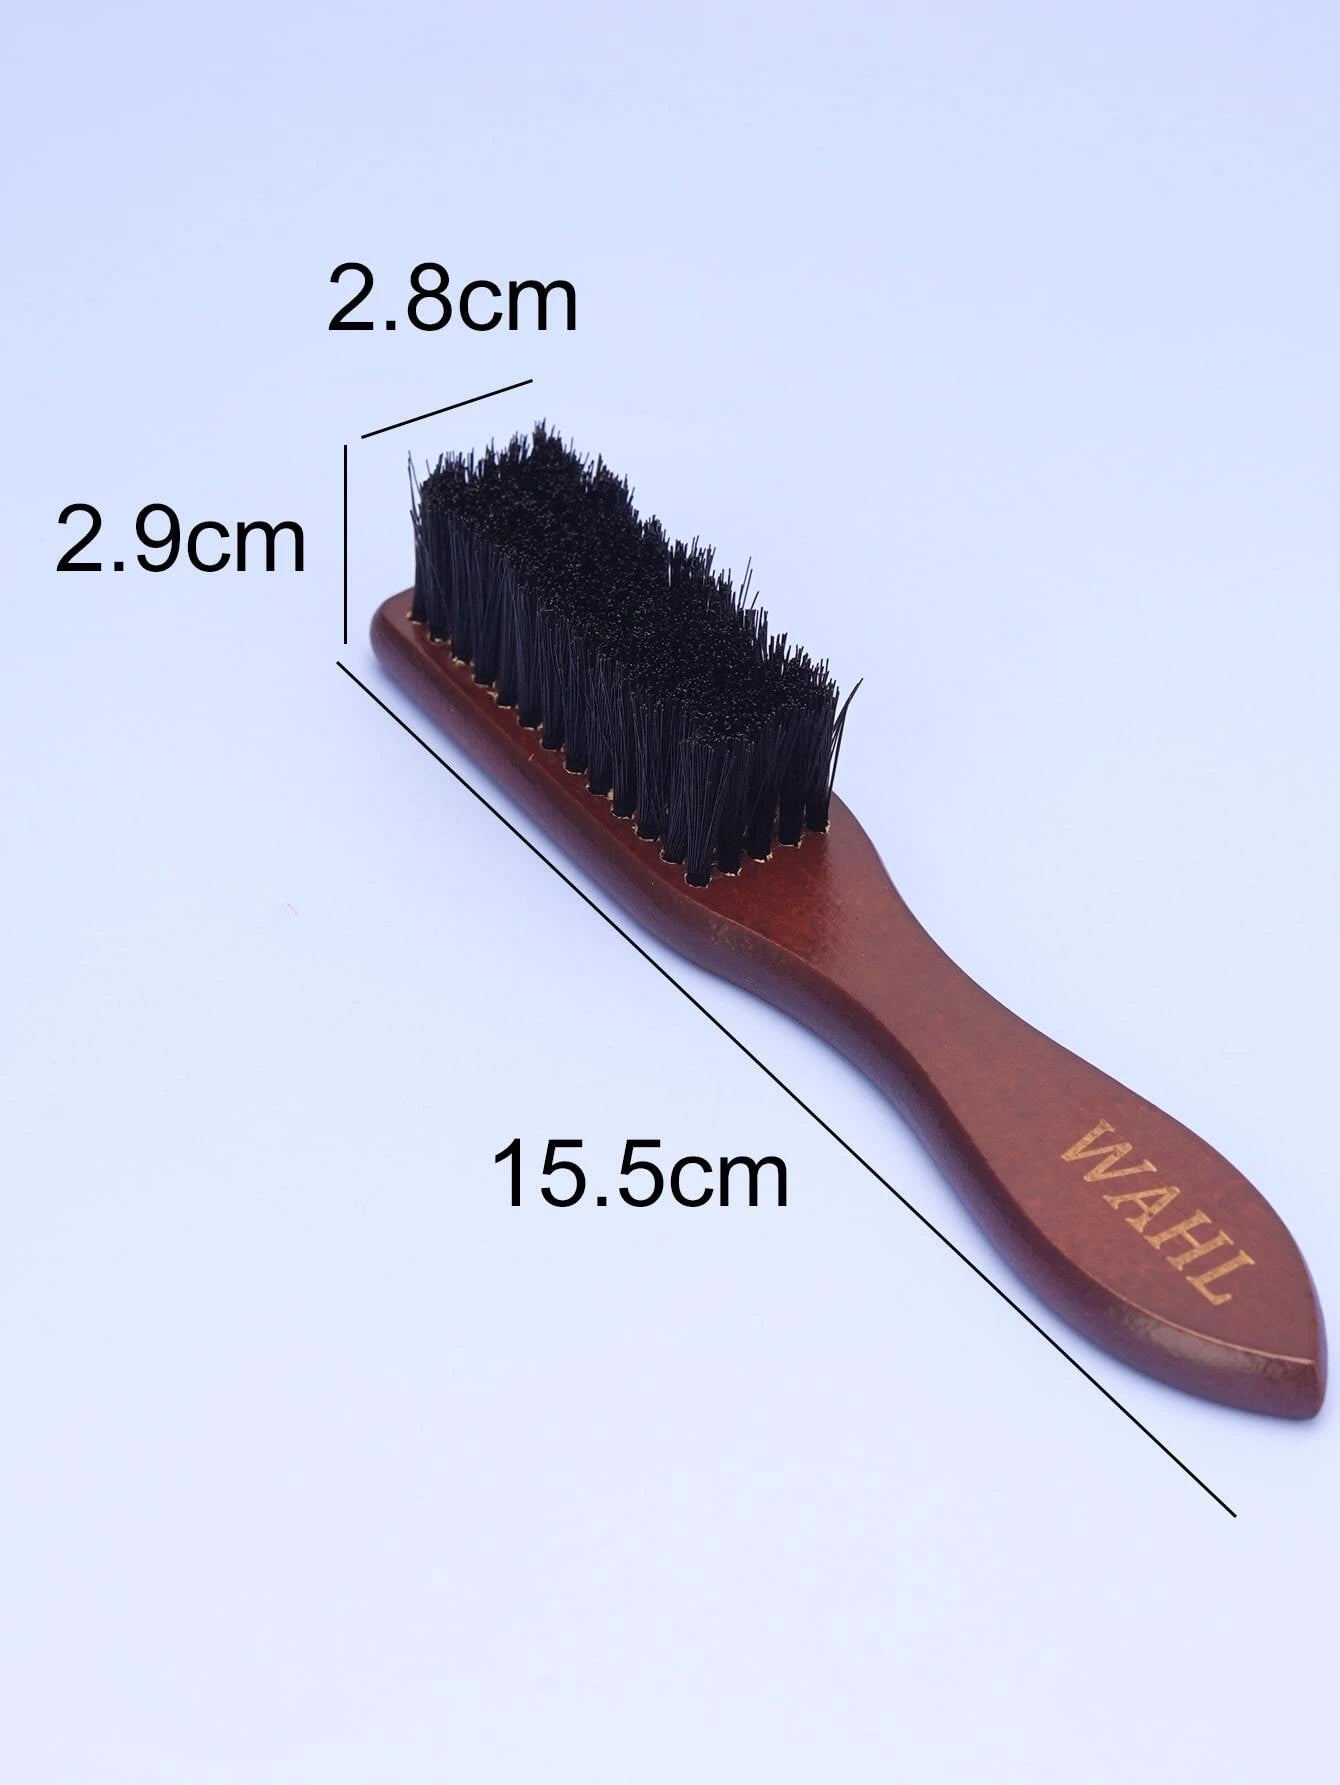 1 Beard Brush Shredded Hair Beard Cleaning Comb Solid Wood Beard Brush Men Oil Head Styling